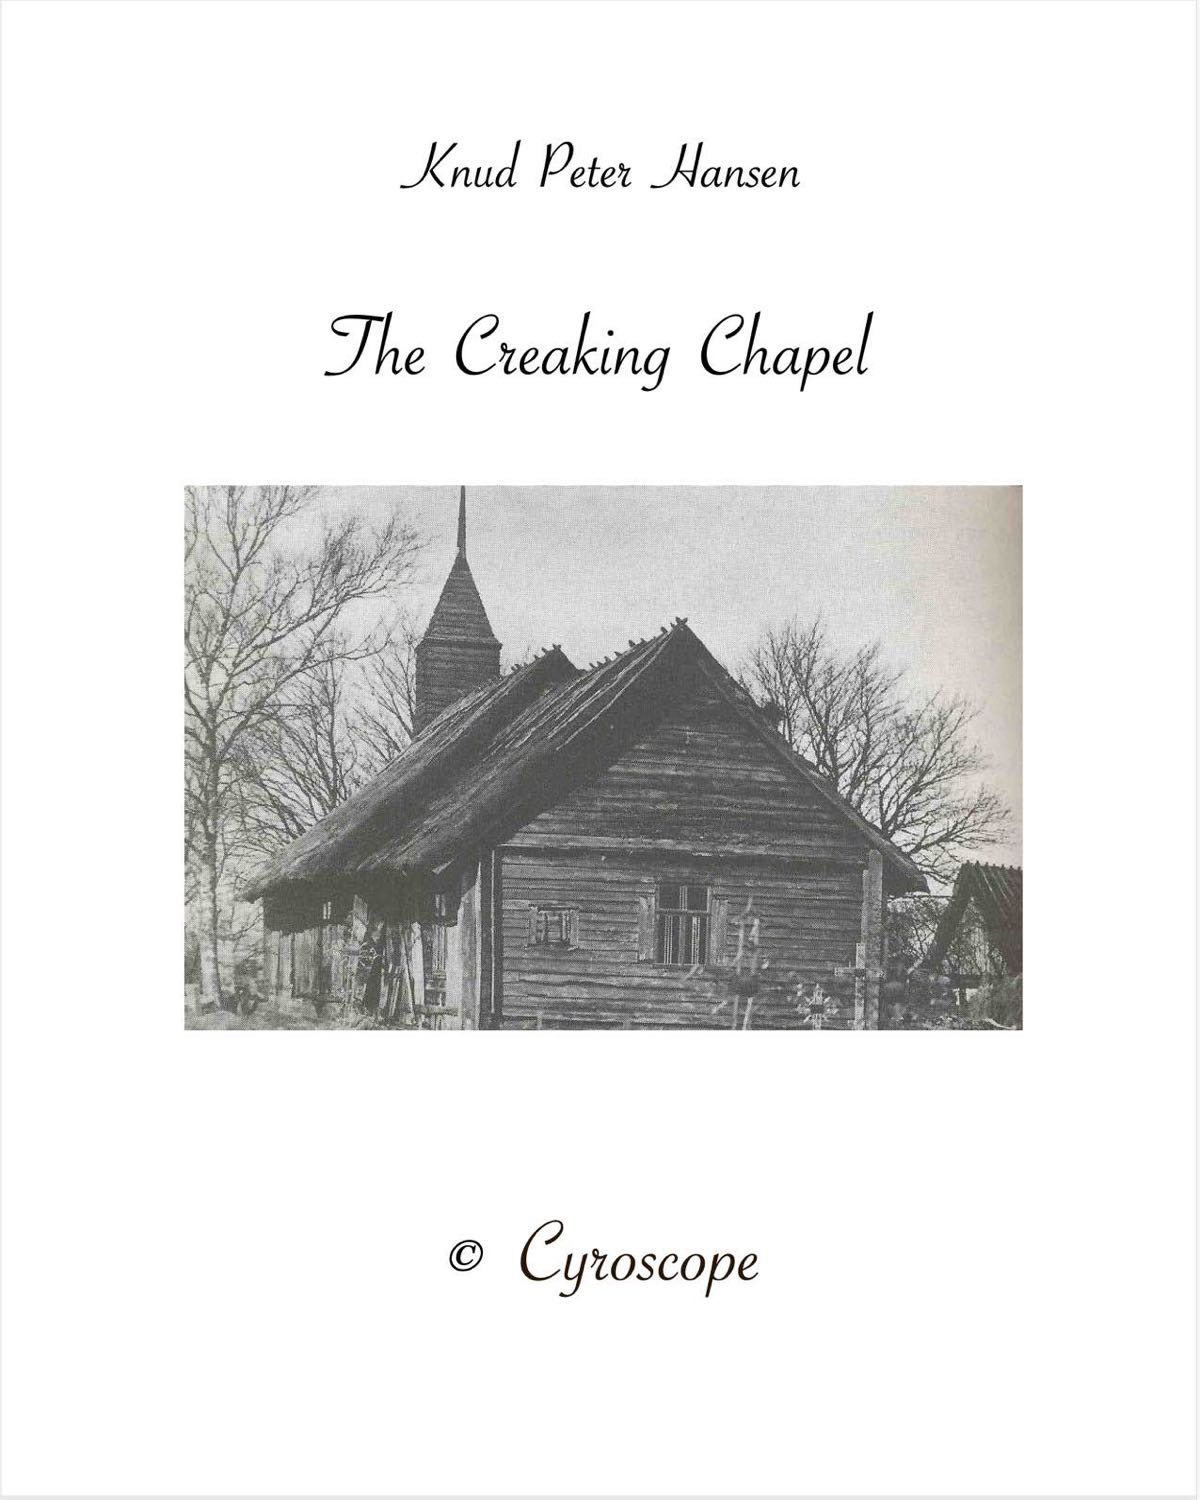 The Creaking Chapel